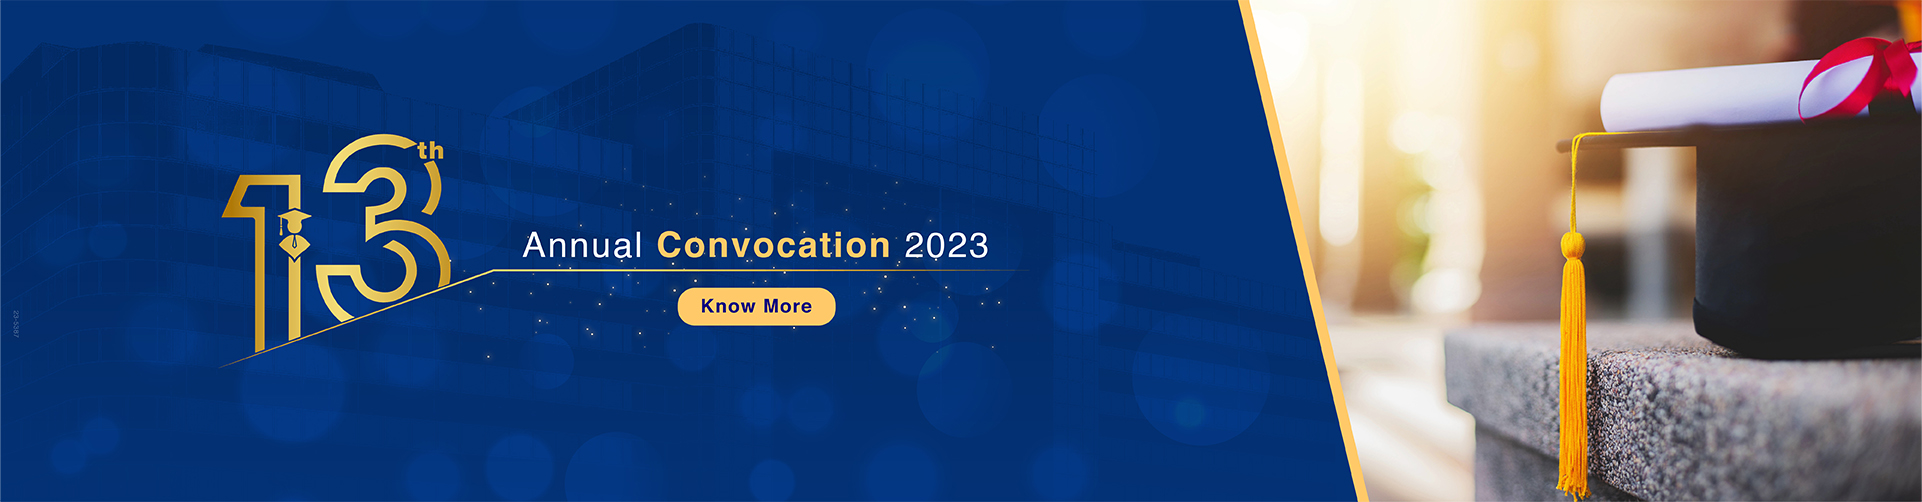 13th Annual Convocation 2023